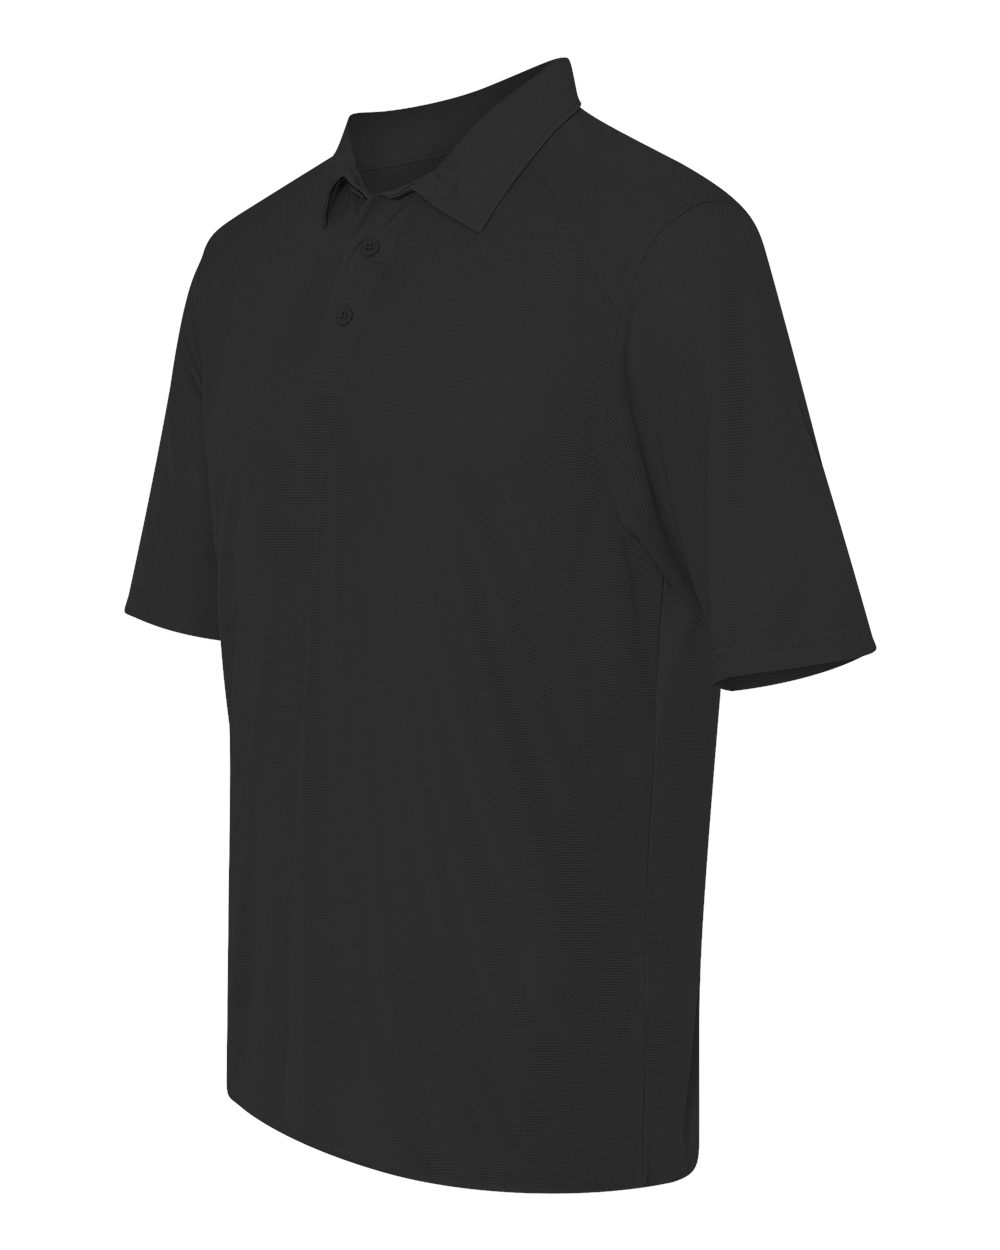 Augusta Sportswear 5001 - Vision Textured Knit Sport Shirt